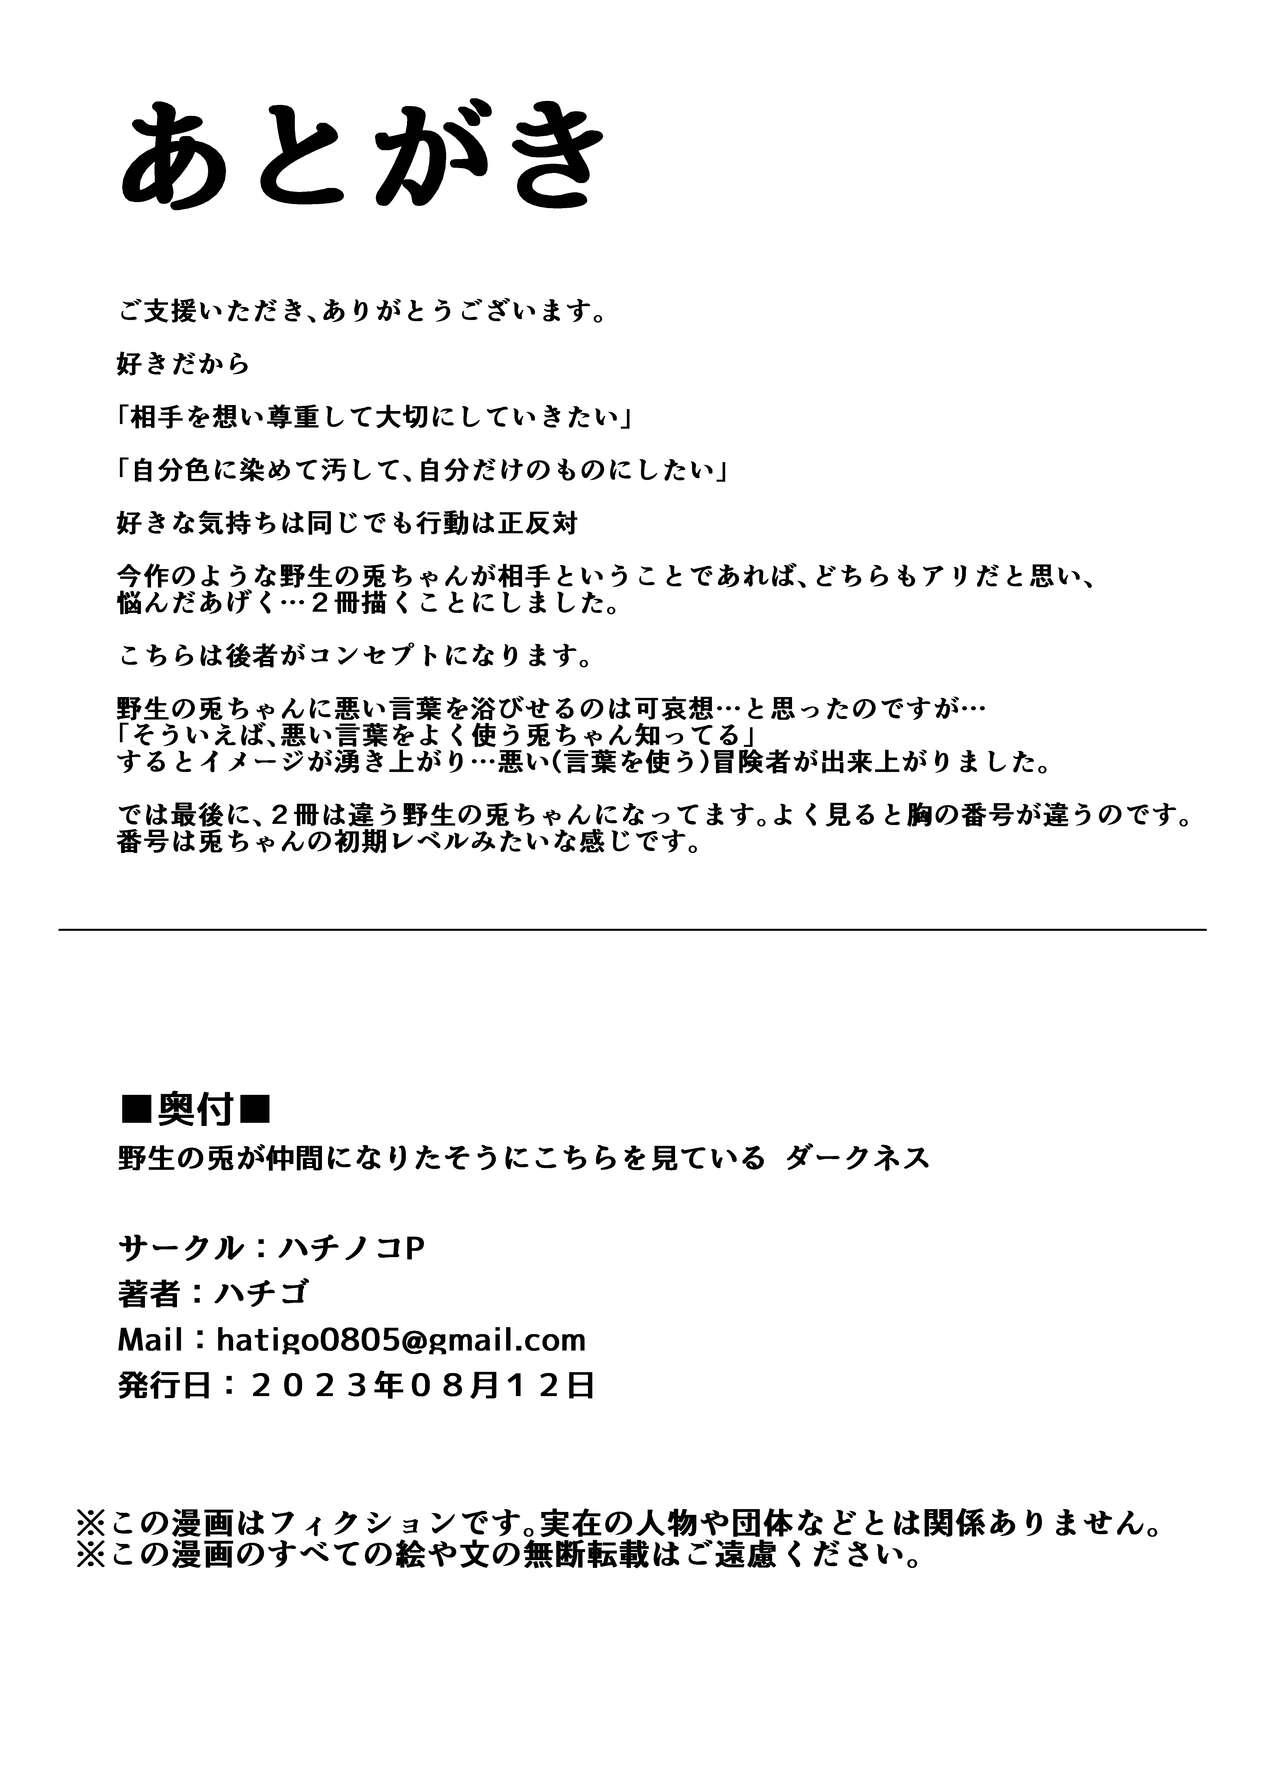 Ameteur Porn Yasei no Usagi ga Nakama ni Naritasou ni Kochira wo Miteiru “Darkness” - Hololive Blowjob Contest - Page 19